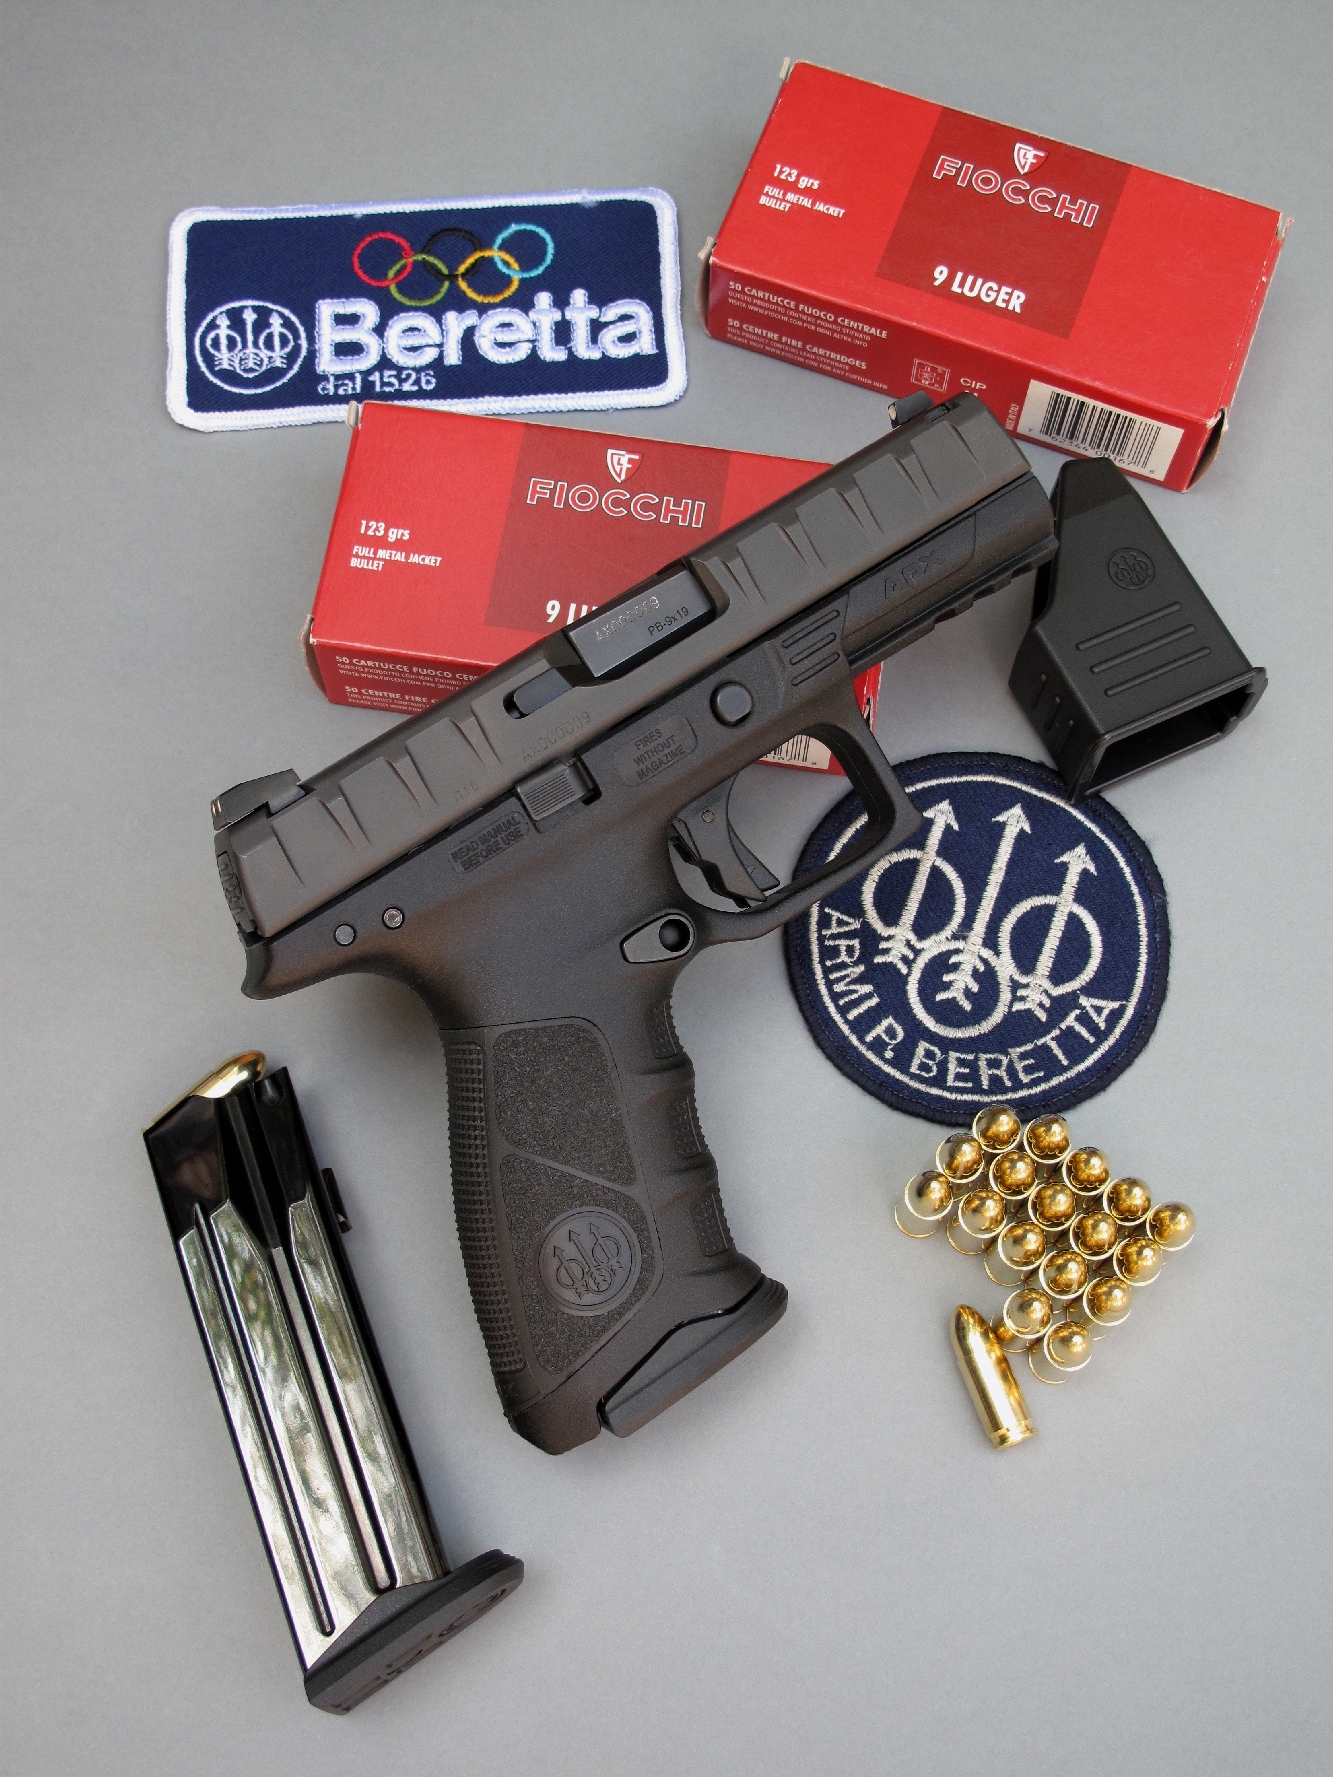 Le pistolet Beretta APX est accompagné par son chargeur de secours, son outil d’aide au remplissage et deux boîtes de 50 cartouches Fiocchi à balle 123 grains FMJ, de la gamme « Classic Line » de ce fabricant italien.